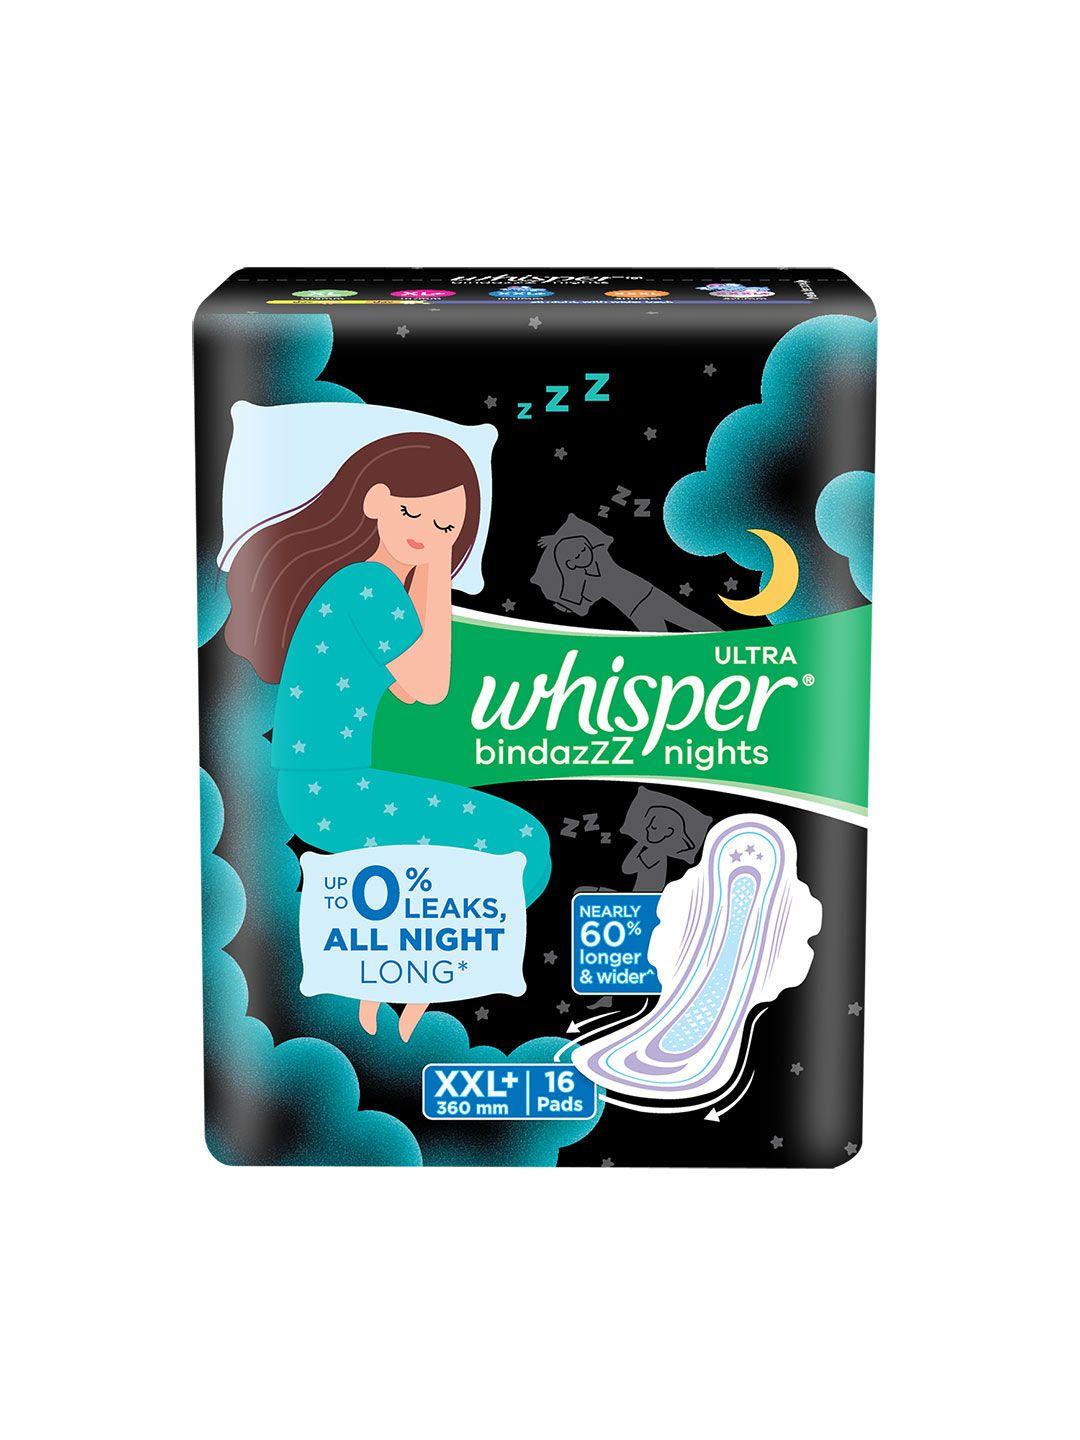 whisper-bindazzs-nights-xxl+-sanitary-pads---16-pads